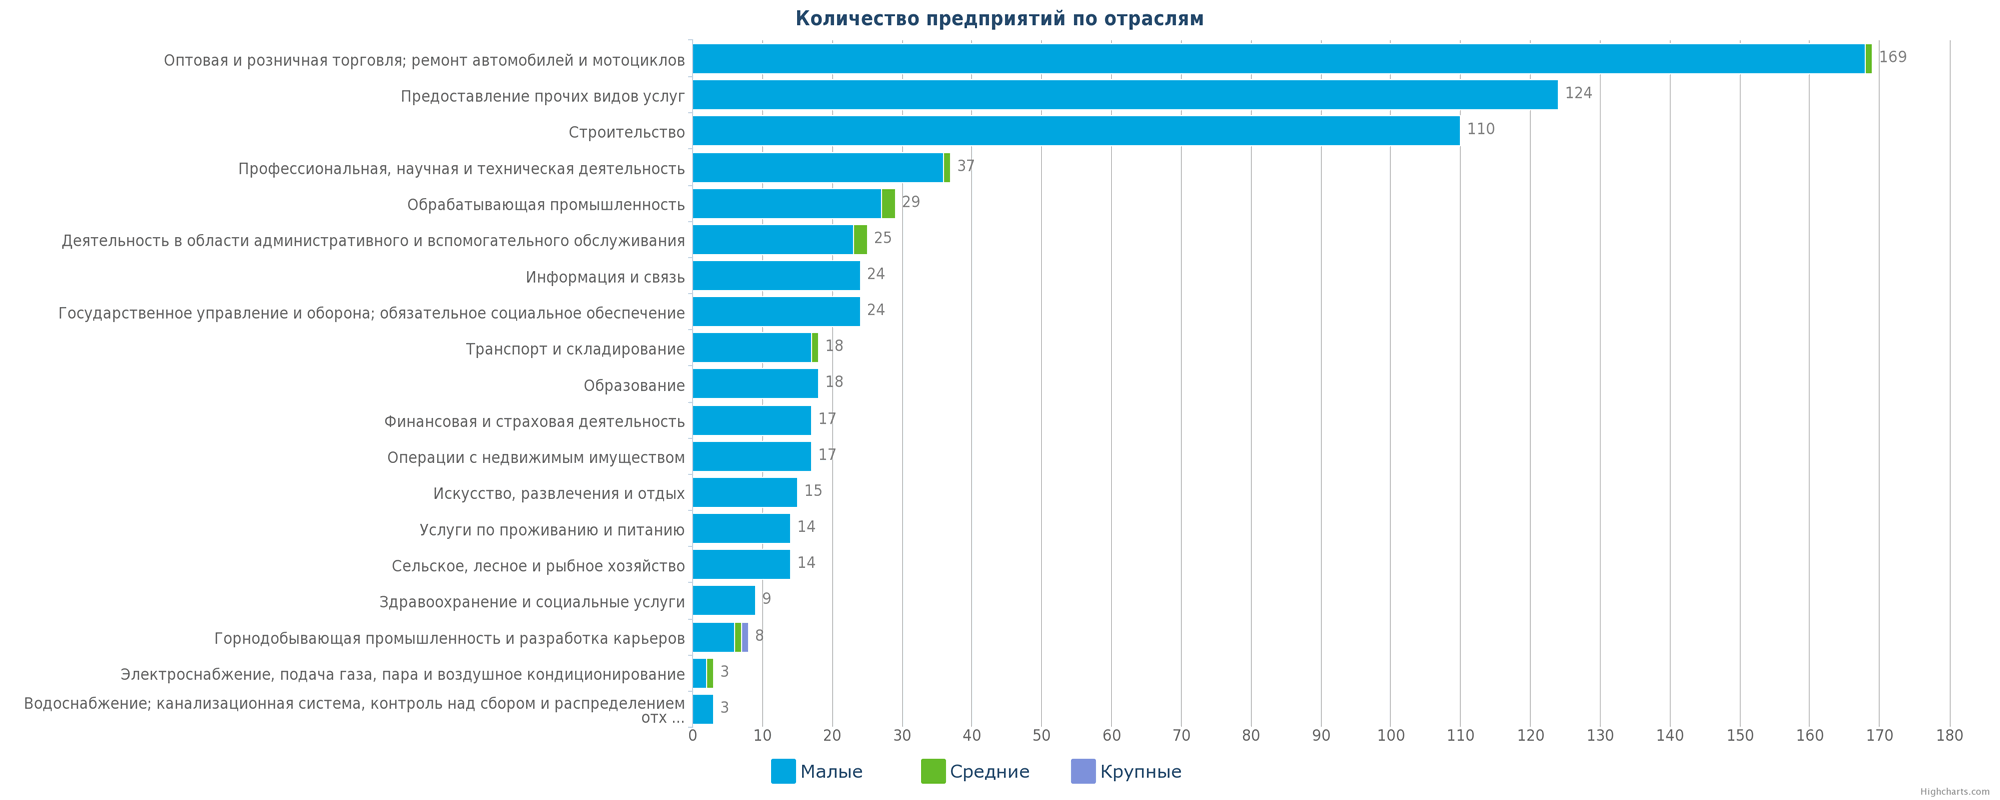 Новые предприятия в базе данных Казахстана по отраслям